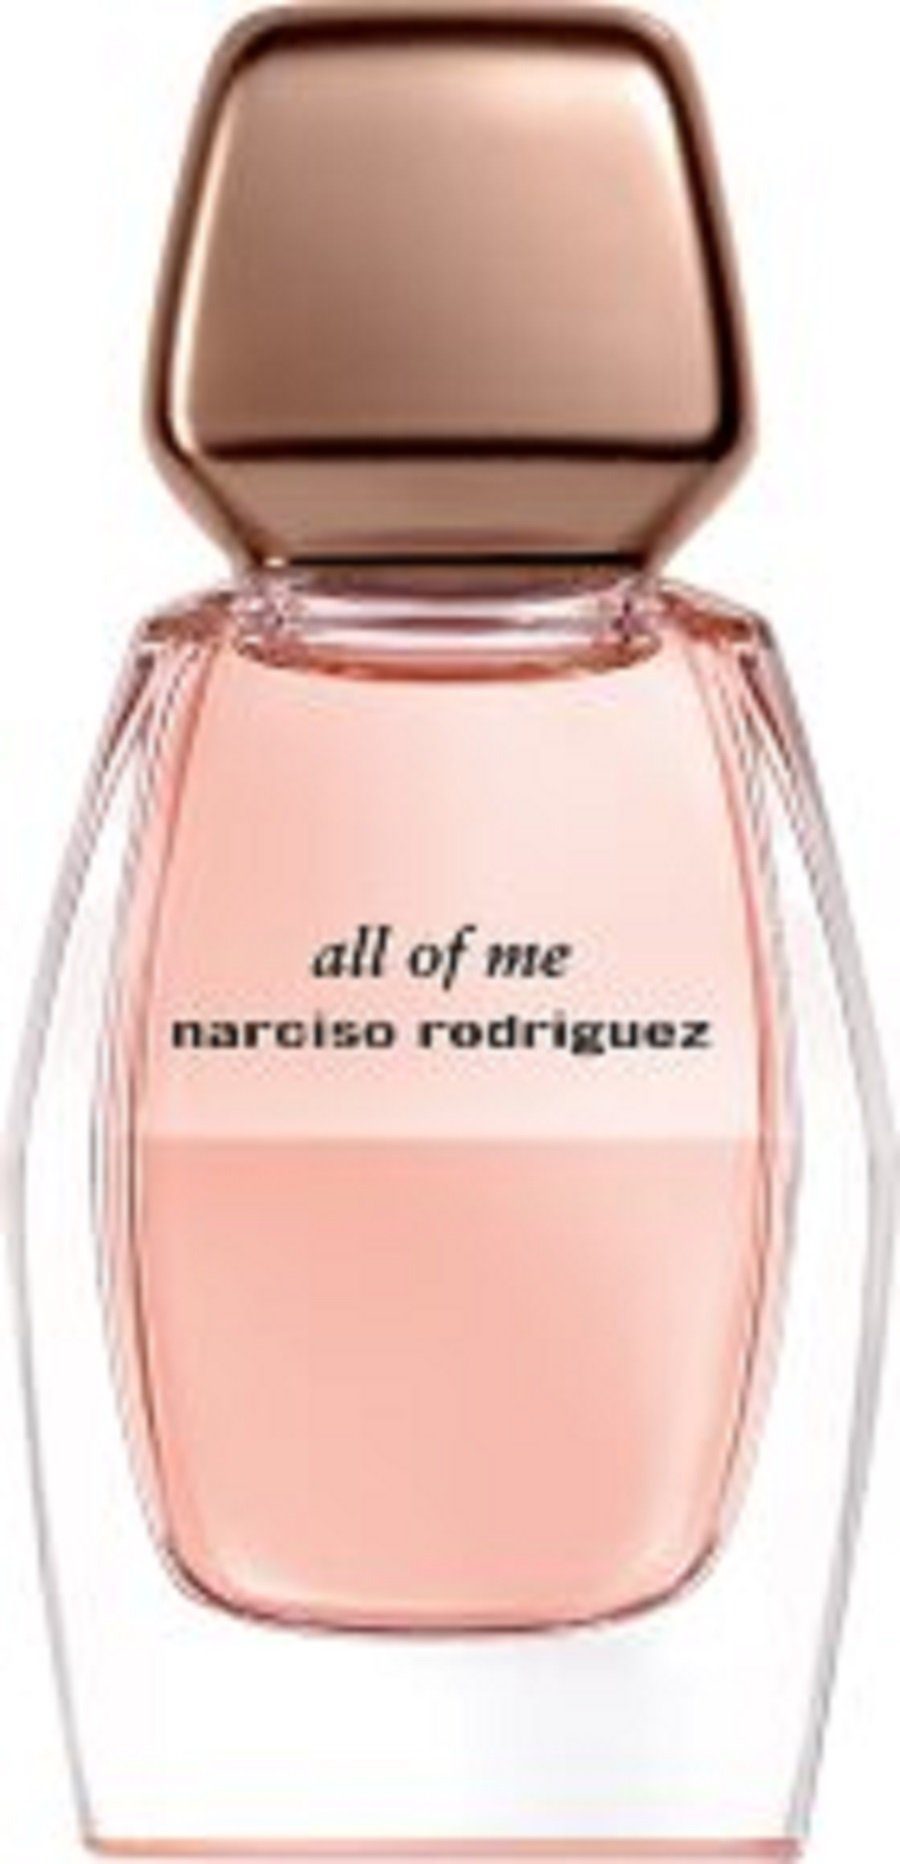 narciso rodriguez Eau de Parfum all of me narciso rodriguez